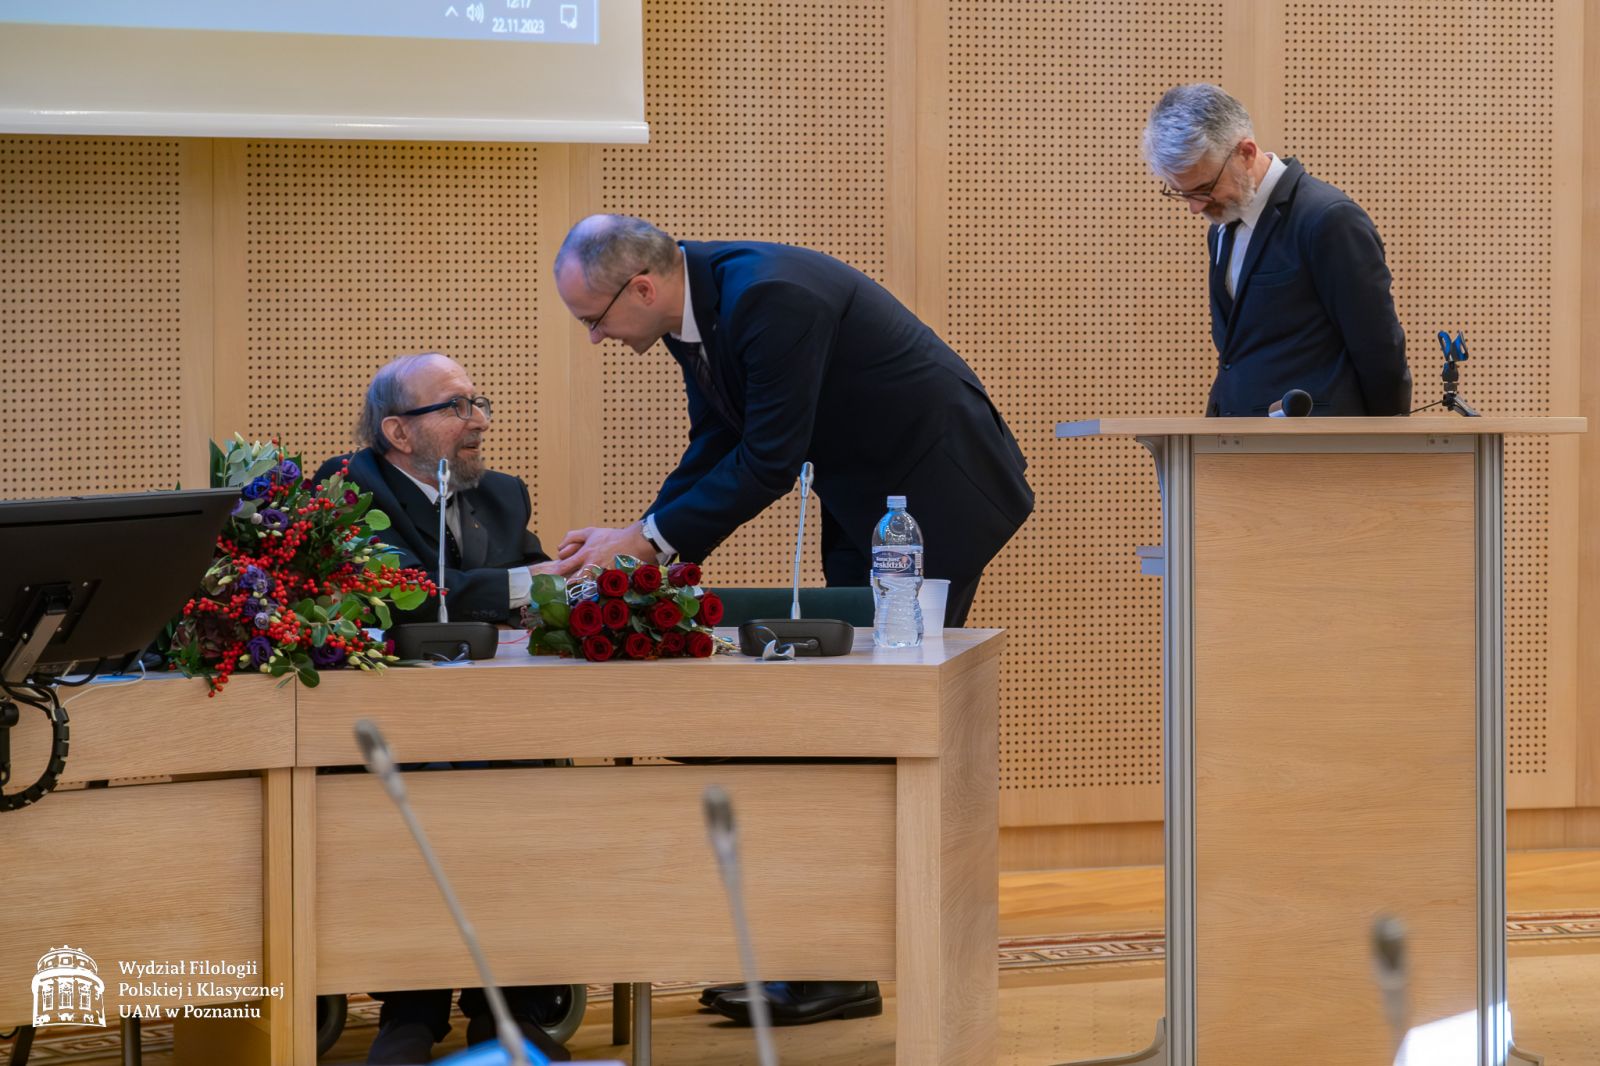 Prof. Krzysztof Skibski kłania się przed Jubilatem, ściskając mu serdecznie dłoń.